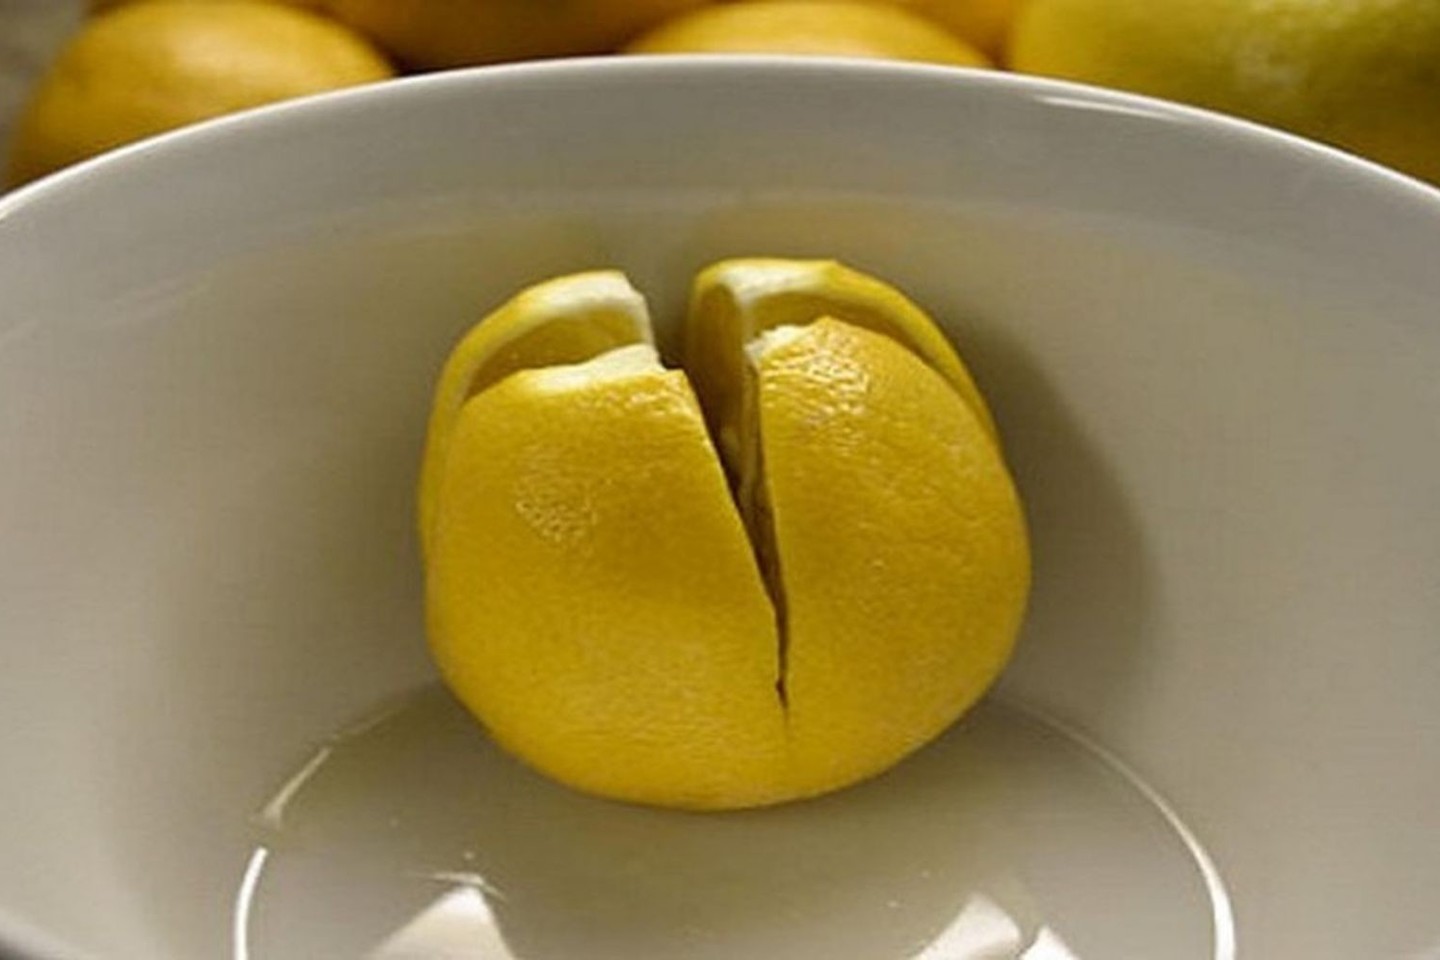 Perpjaukite taip citriną ir pasidėkite nakčiai prie lovos.<br>„Pinterest“ nuotr.